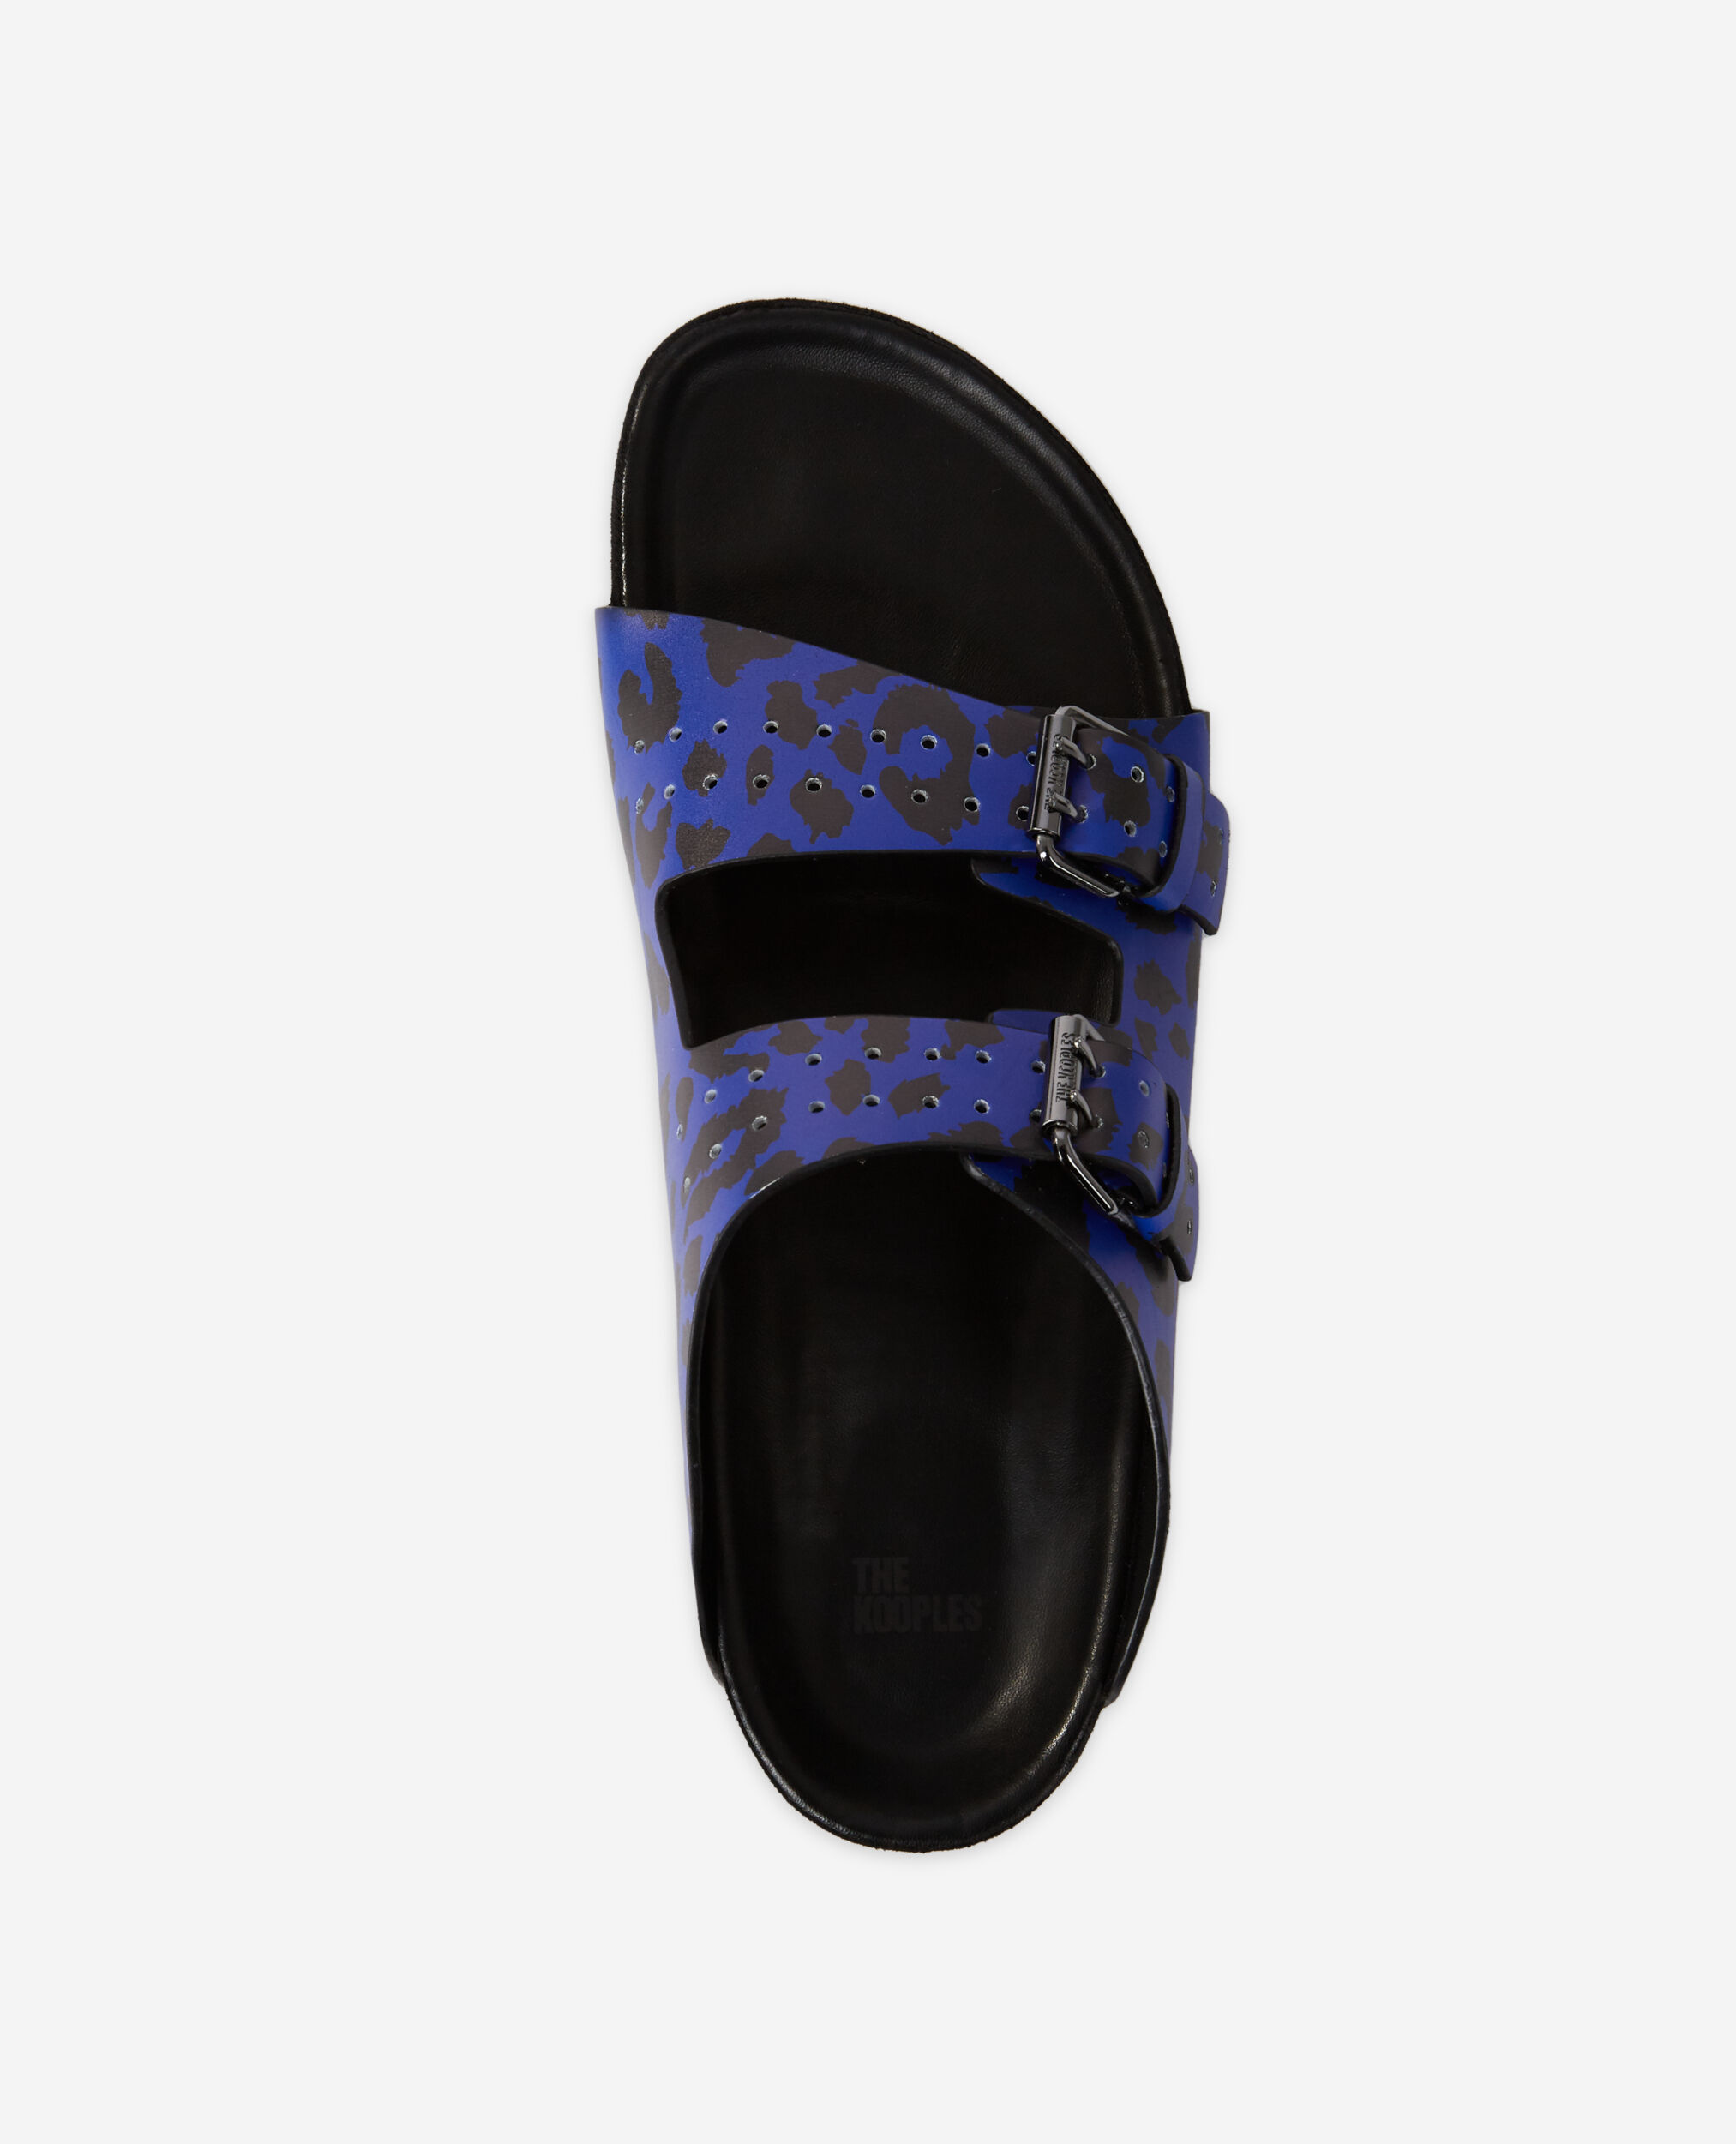 Sandalias piel leopardo azules, BLUE, hi-res image number null